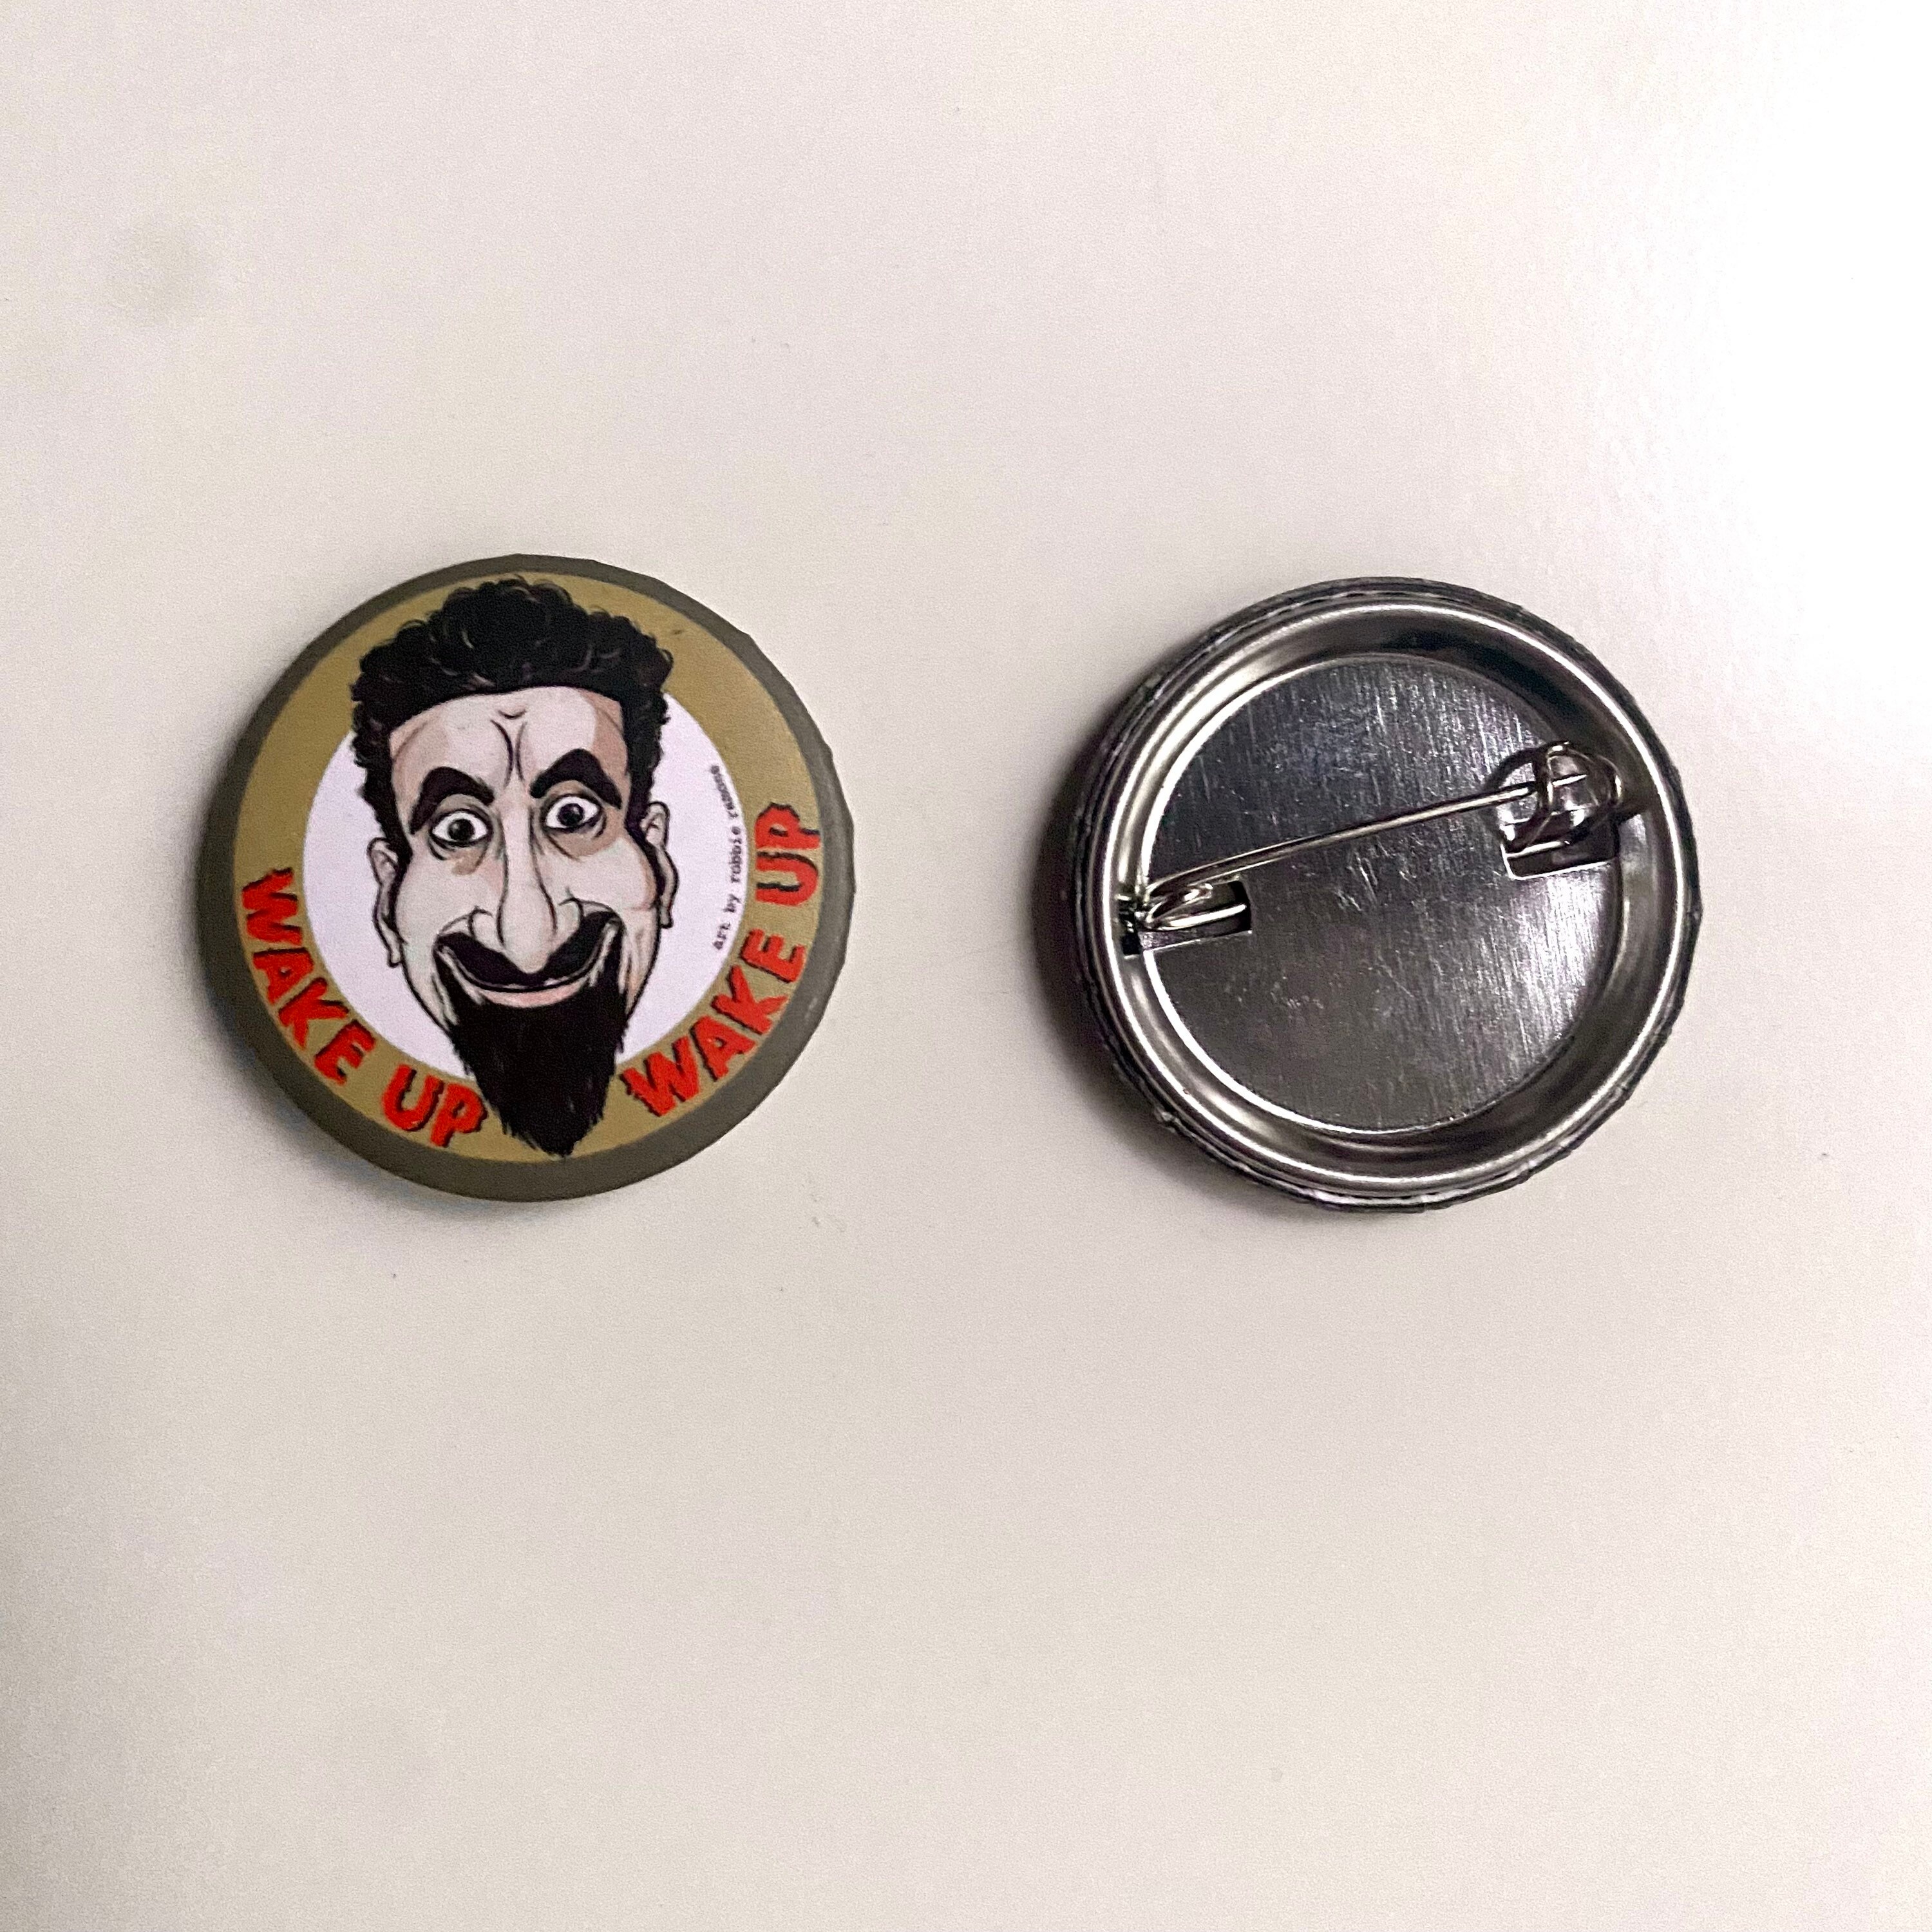 Nu Metal 1 Button Pin Set Korn Linkin Park Limp Bizkit (10 pins total)